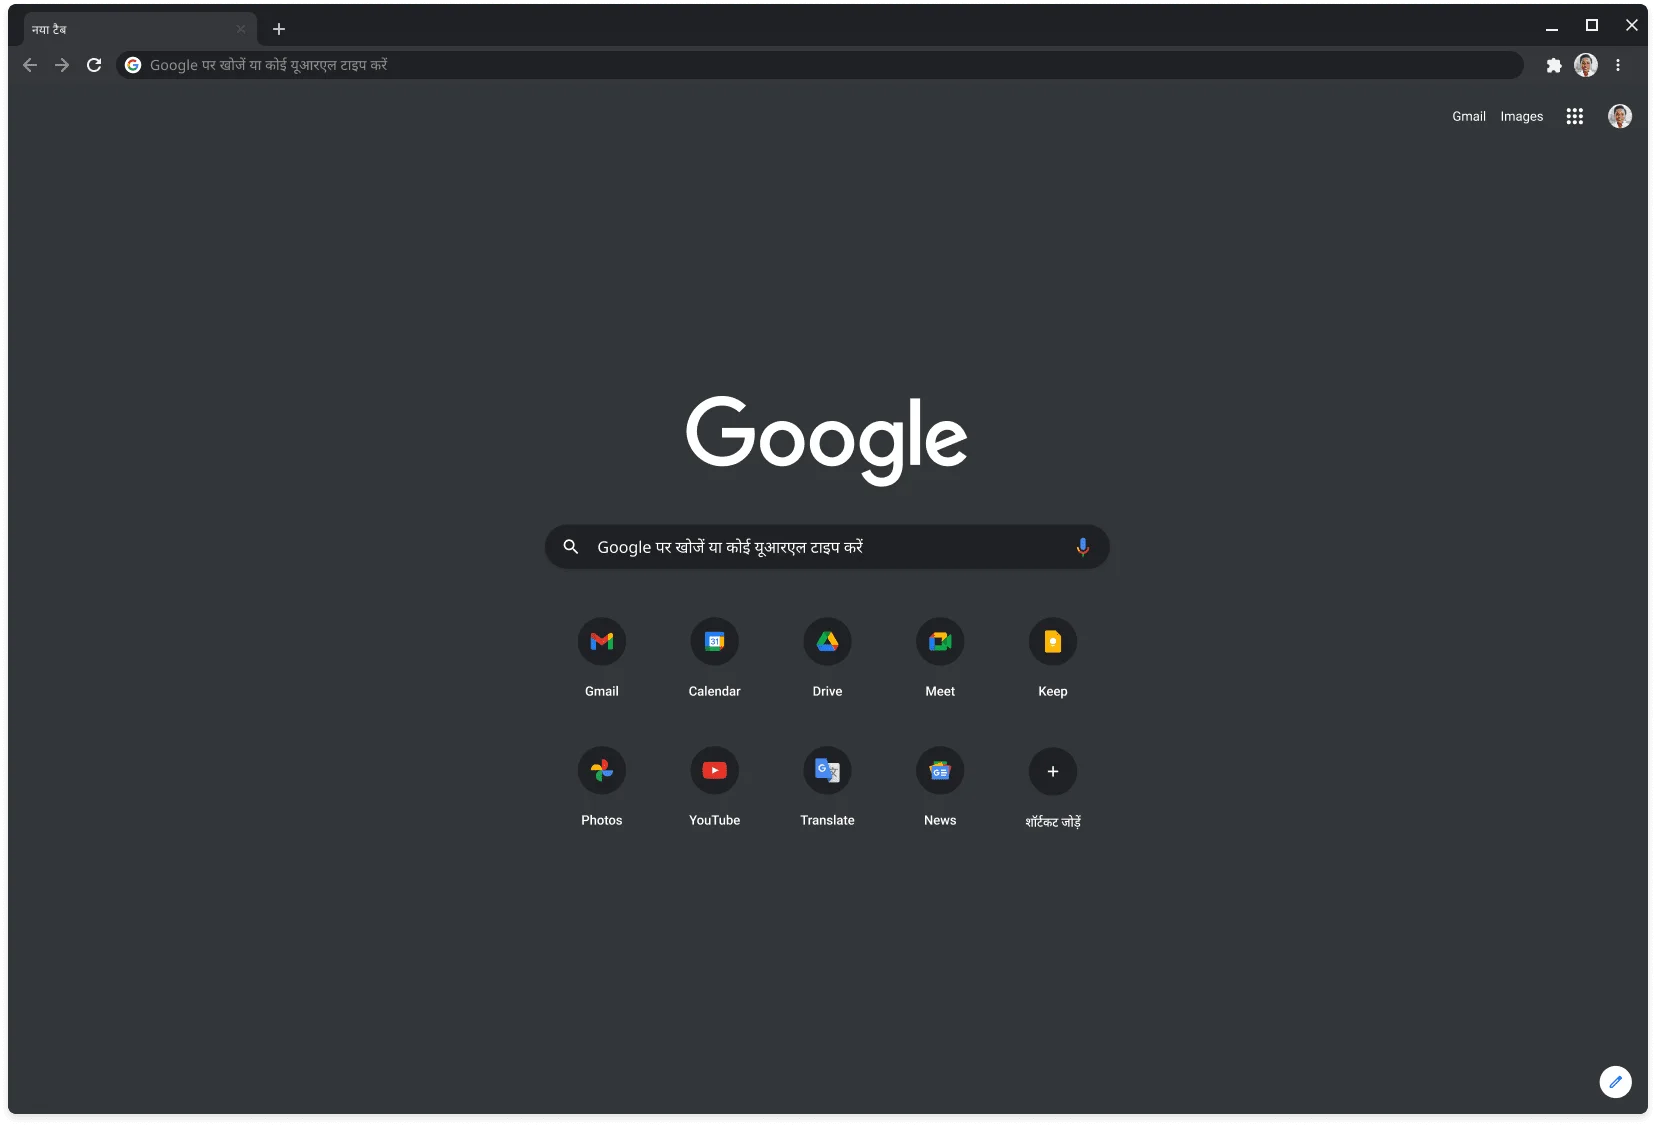 गहरे रंग वाले मोड में Chrome ब्राउज़र की विंडो, जिस पर Google.com साइट दिख रही है.